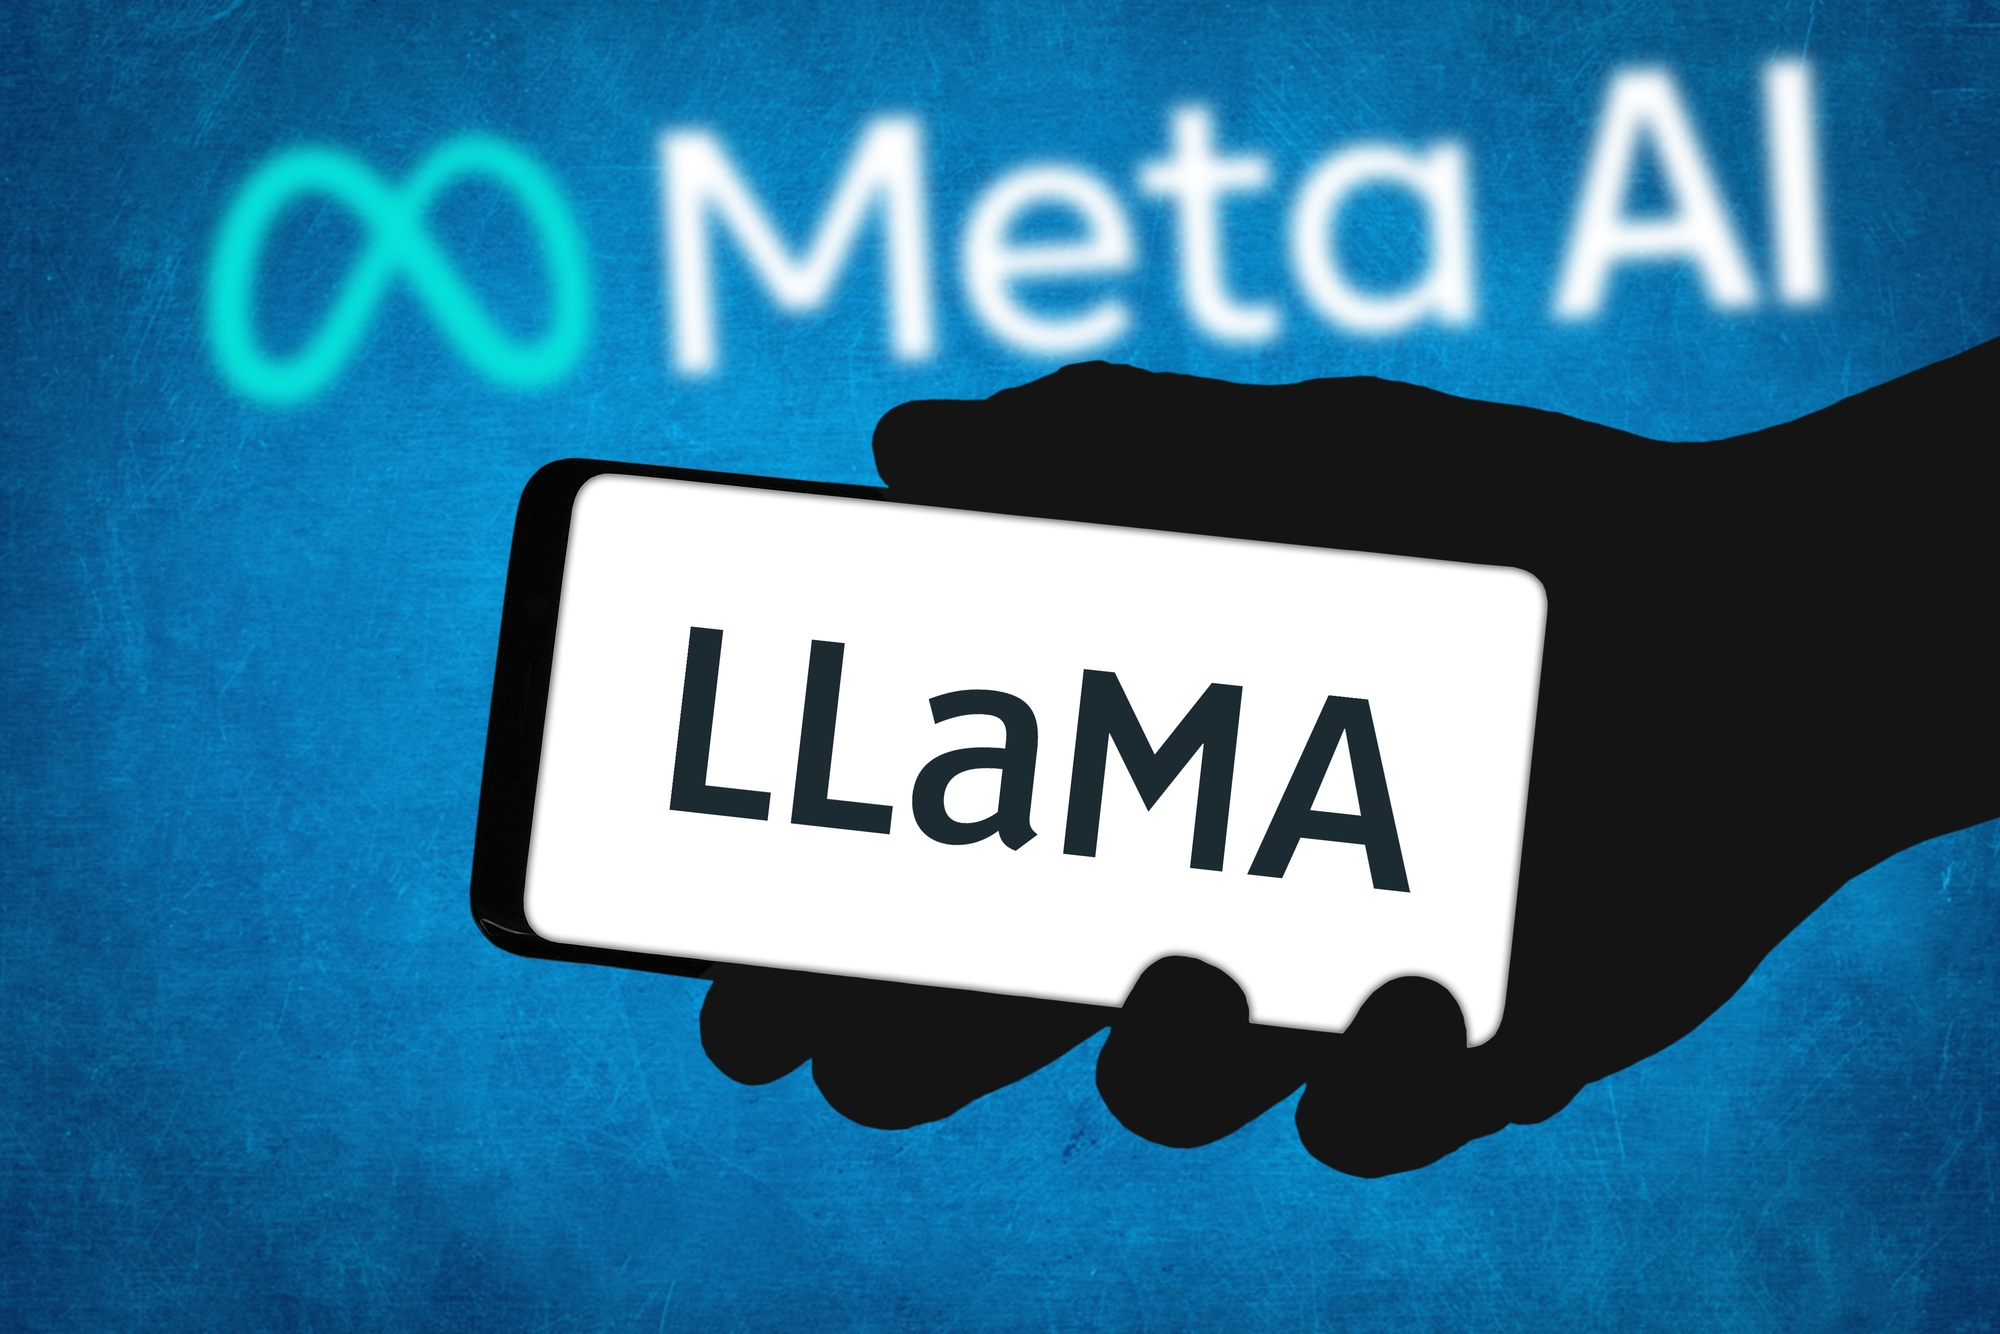 LLaMa, le modèle de langage destiné à l'IA de Facebook, fuite sur Internet !